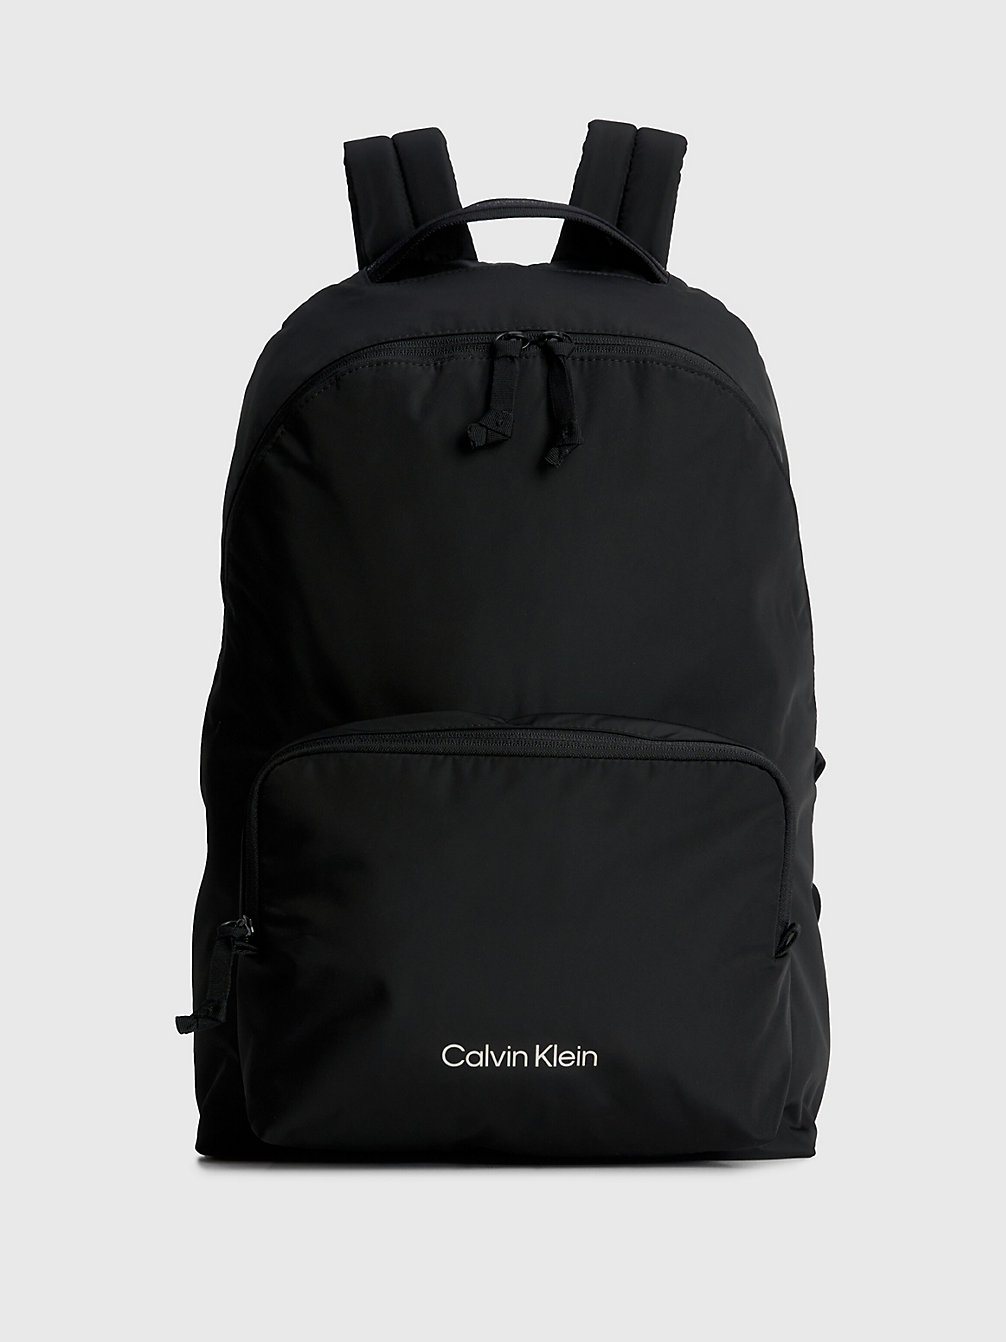 BLACK > Plecak Z Materiałów Z Recyklingu > undefined unisex - Calvin Klein